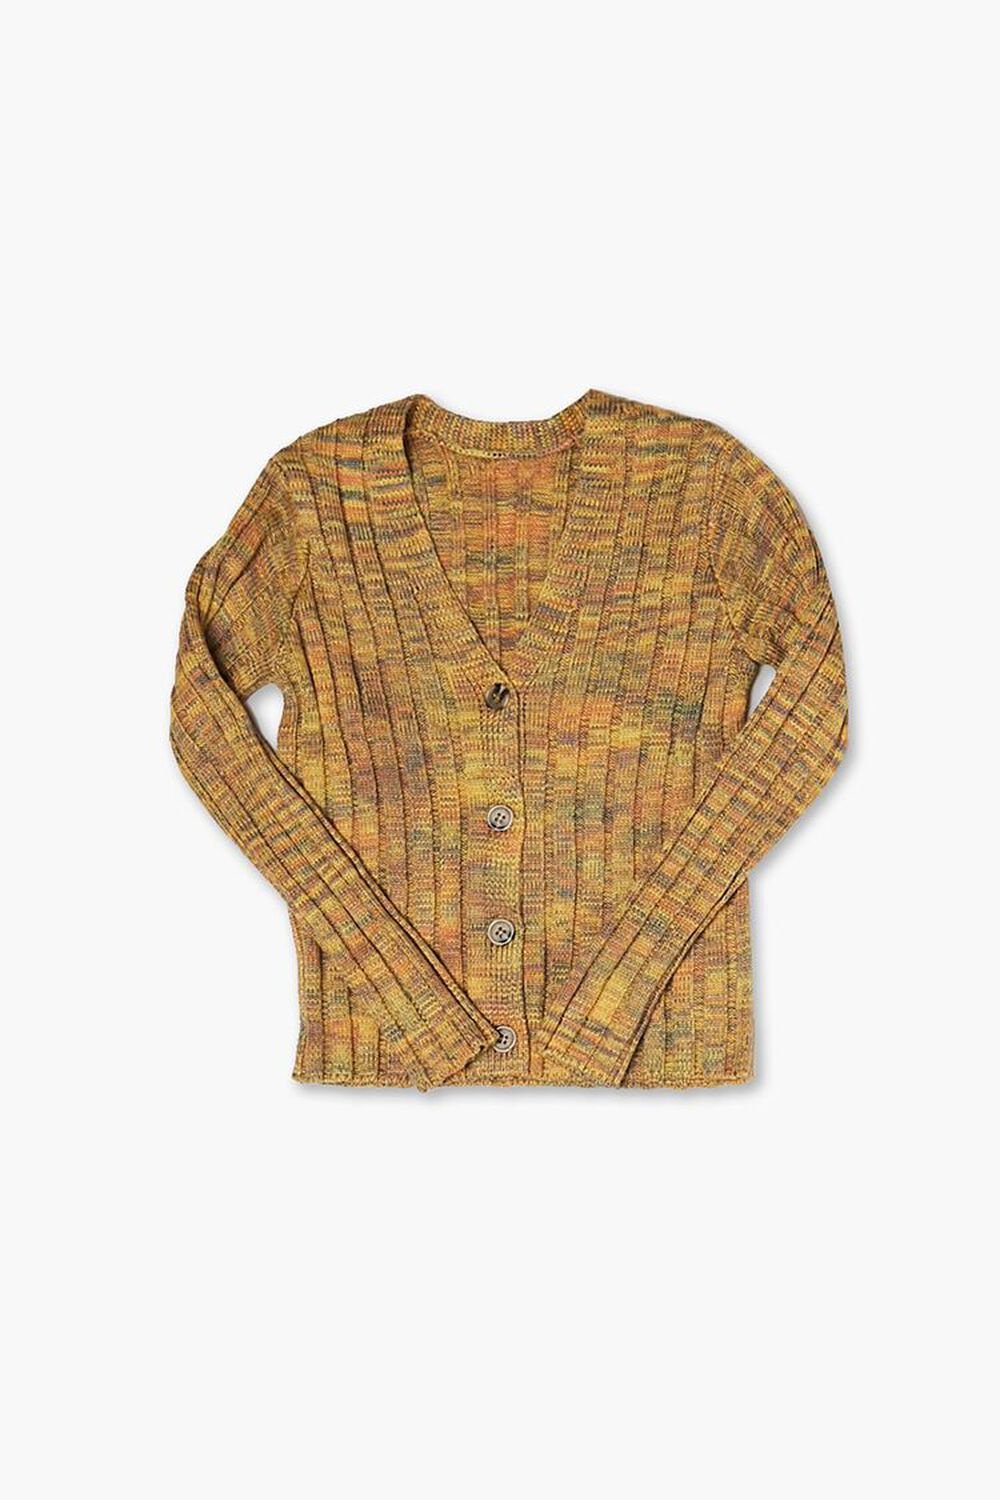 ORANGE/MULTI Girls Marled Cardigan Sweater (Kids), image 1